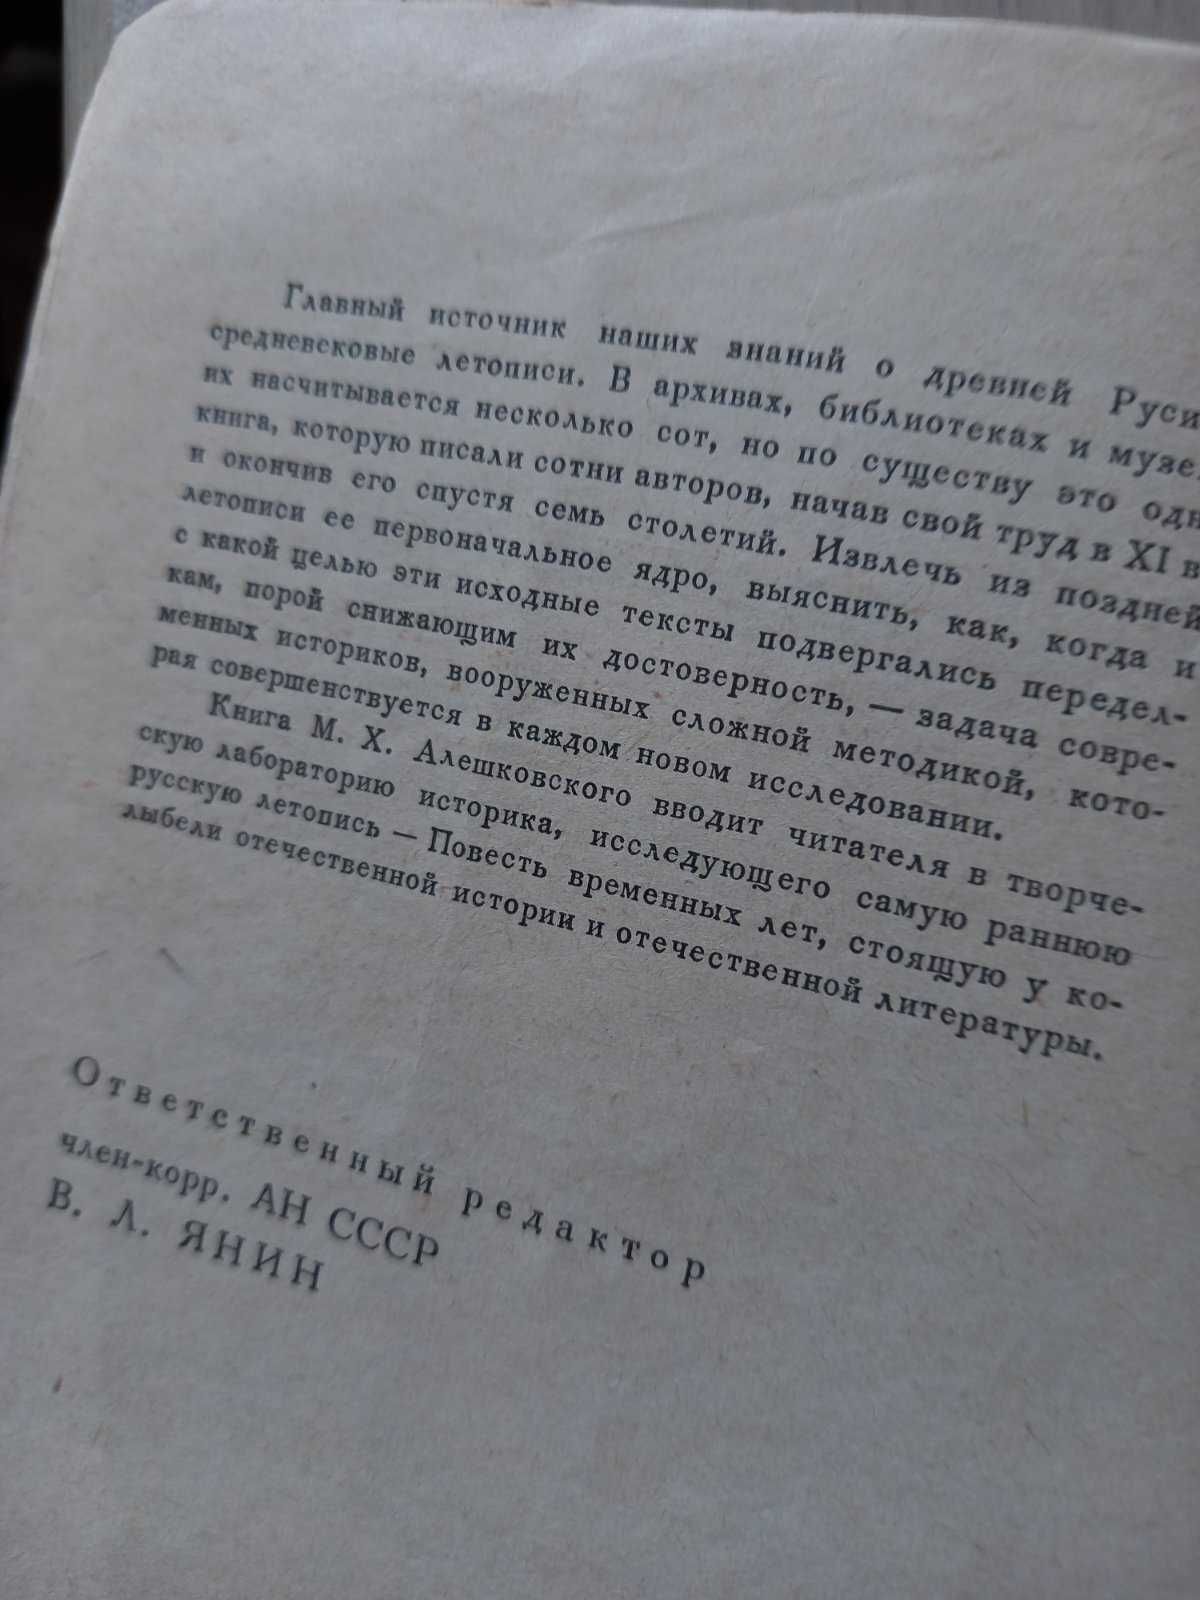 1971 г. " Повесть временных лет. Судьба литературного произведения